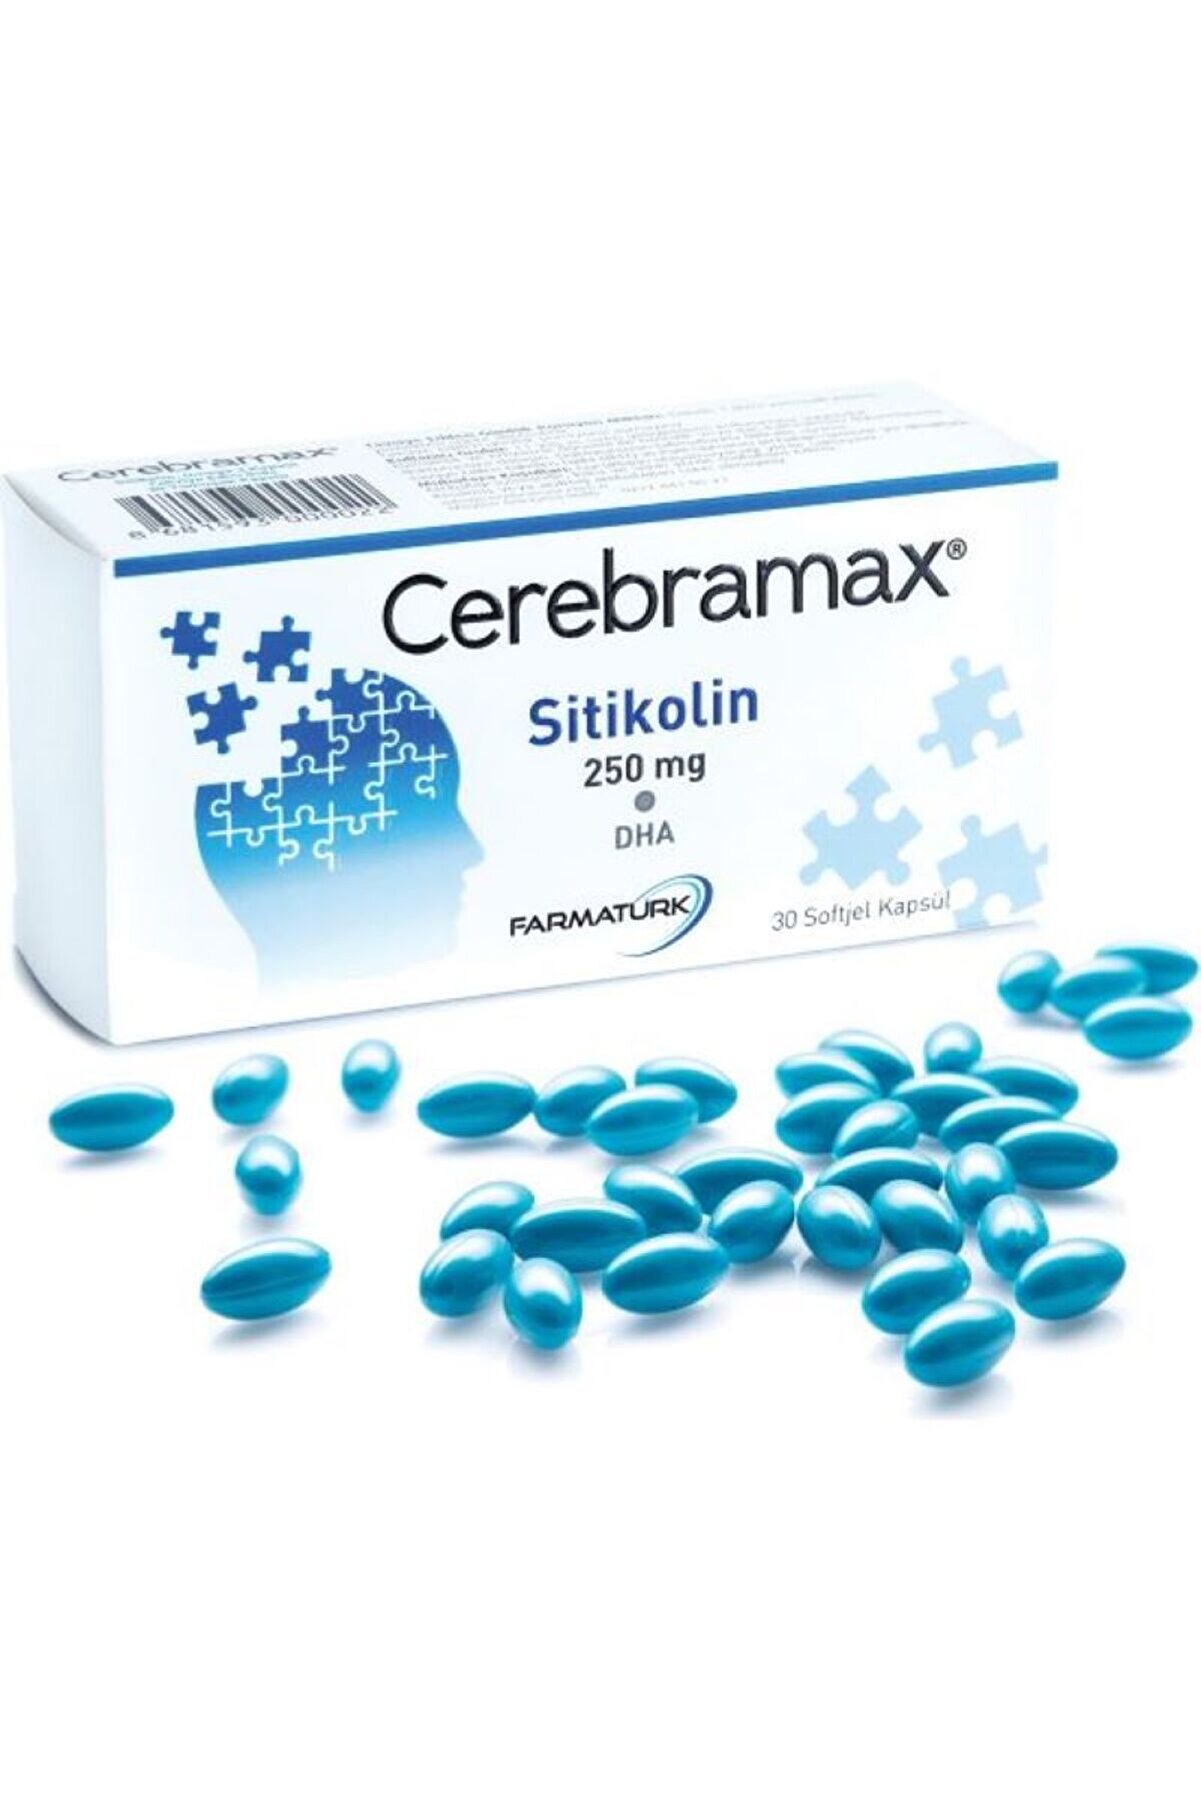 Farmaturk Cerebramax Softjel Kapsül 250 Mg Sitikolin & Dha